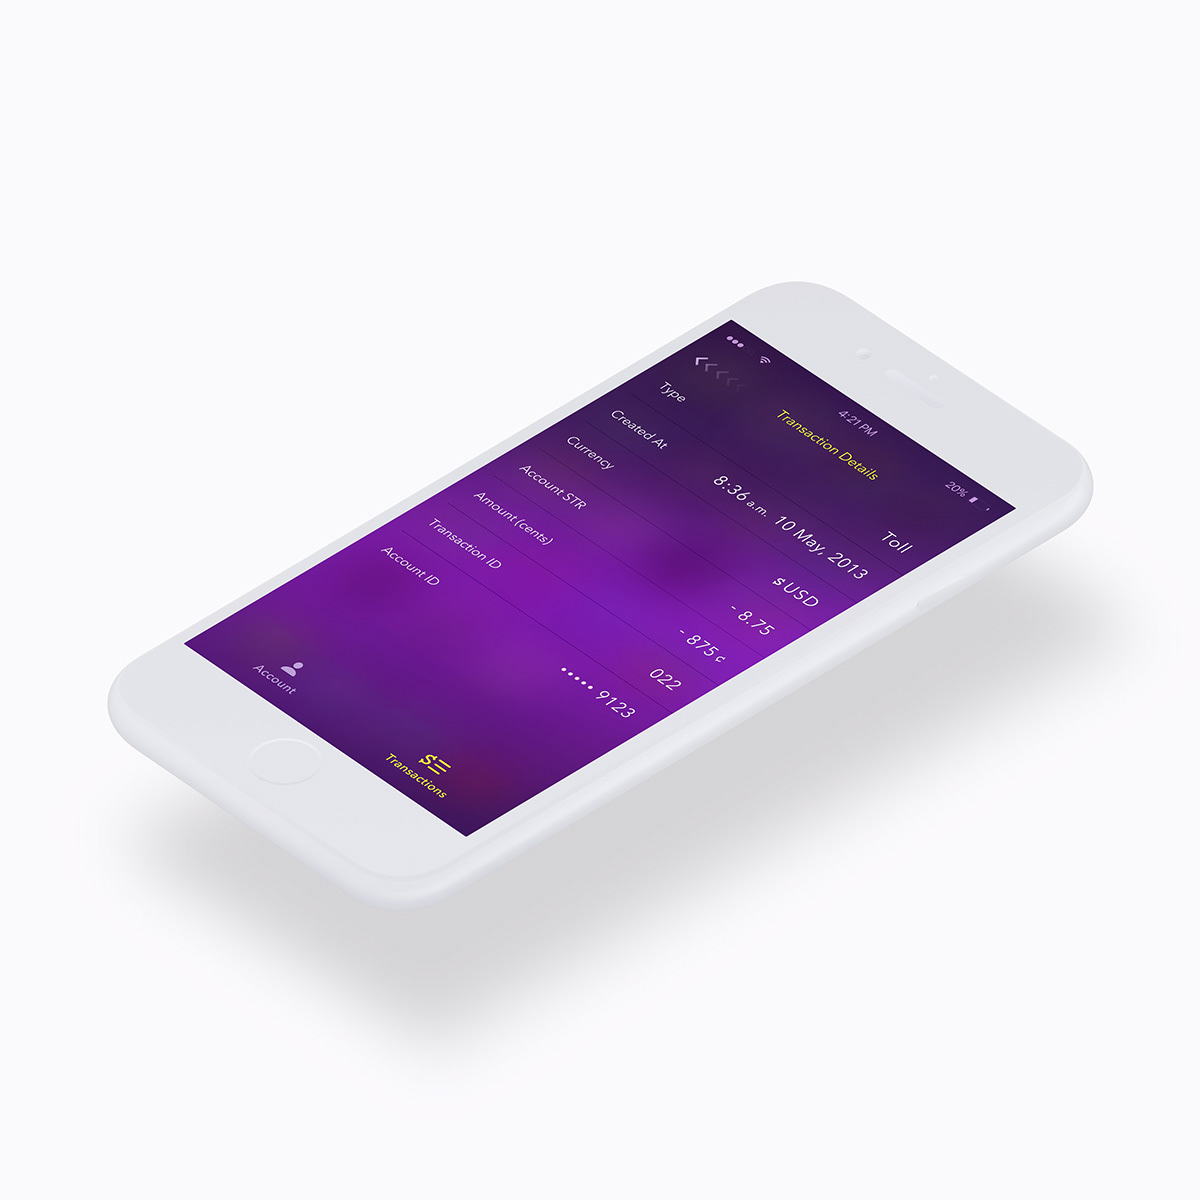 ezpass mobile ios app design Adobe Portfolio